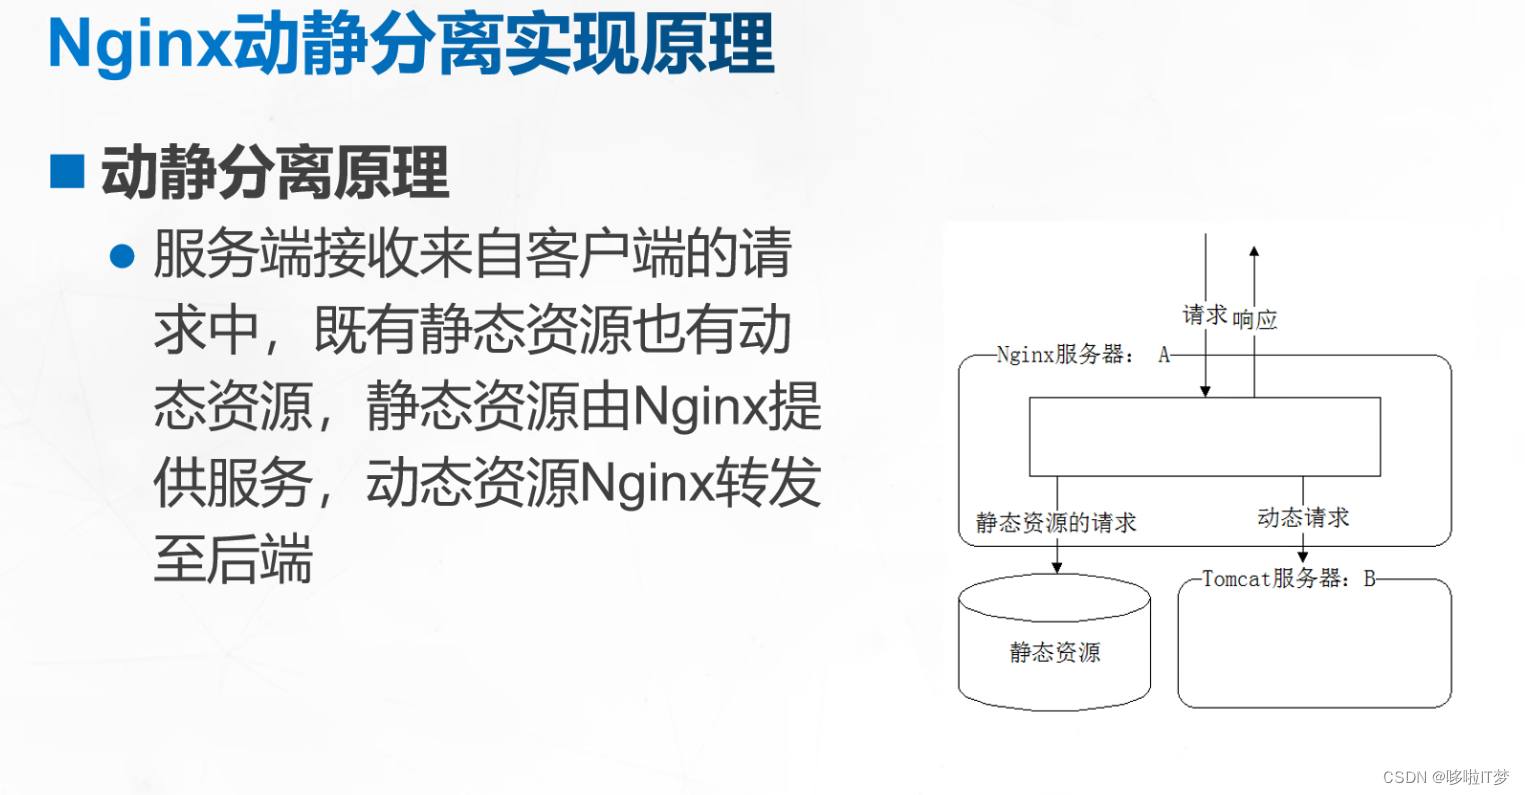 Nginx+Tomcat负载均衡、动静分离原理